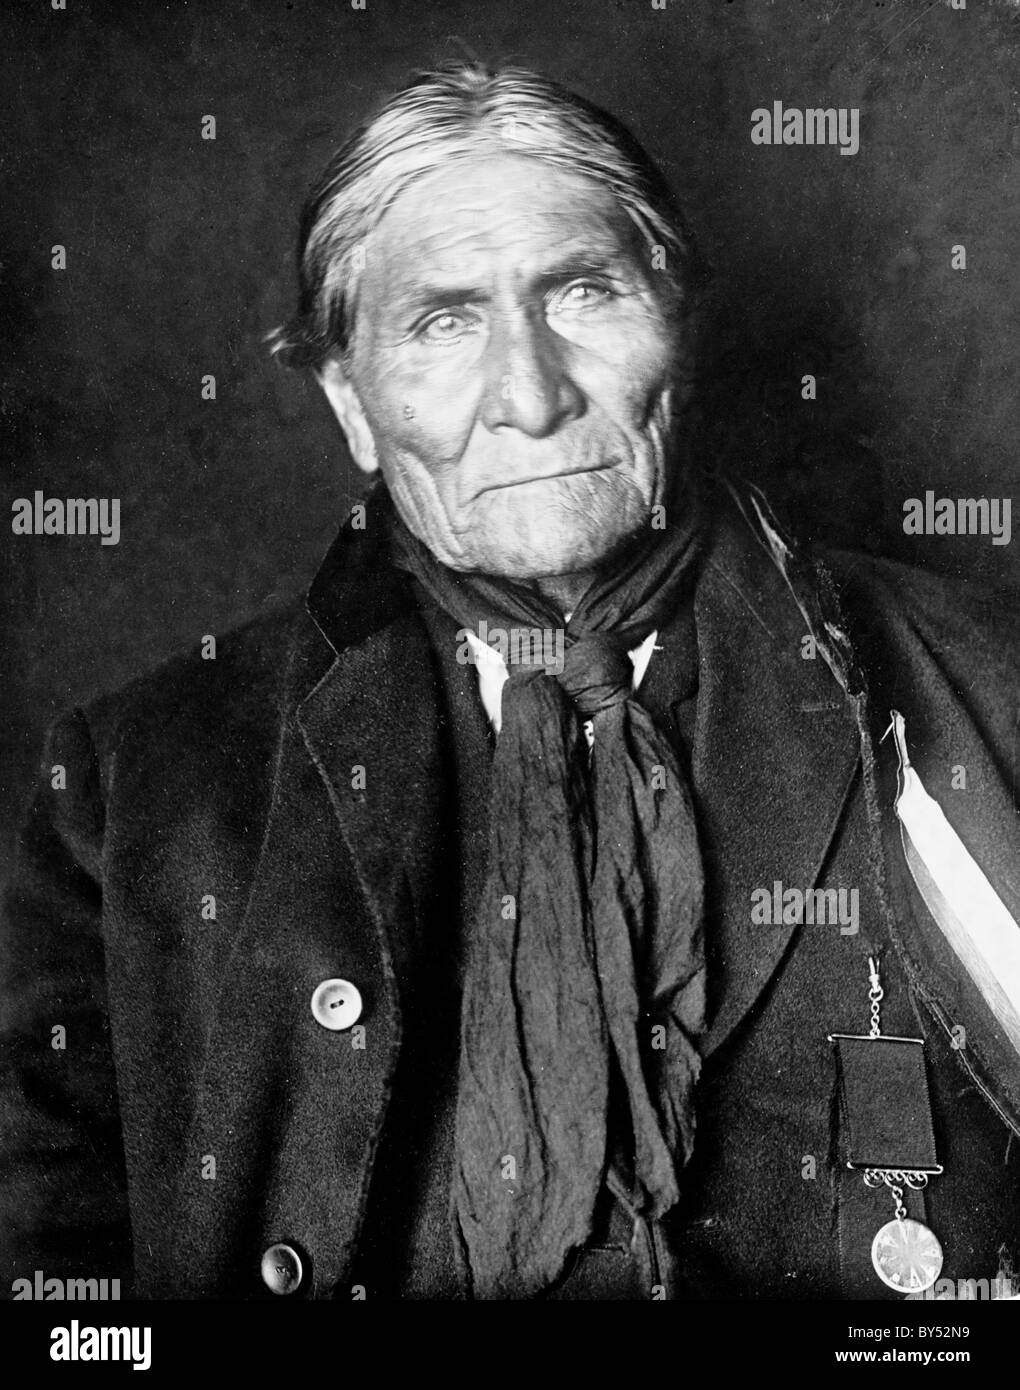 Geronimo, nativo americana leader del Chiricahua Apache. Foto Stock